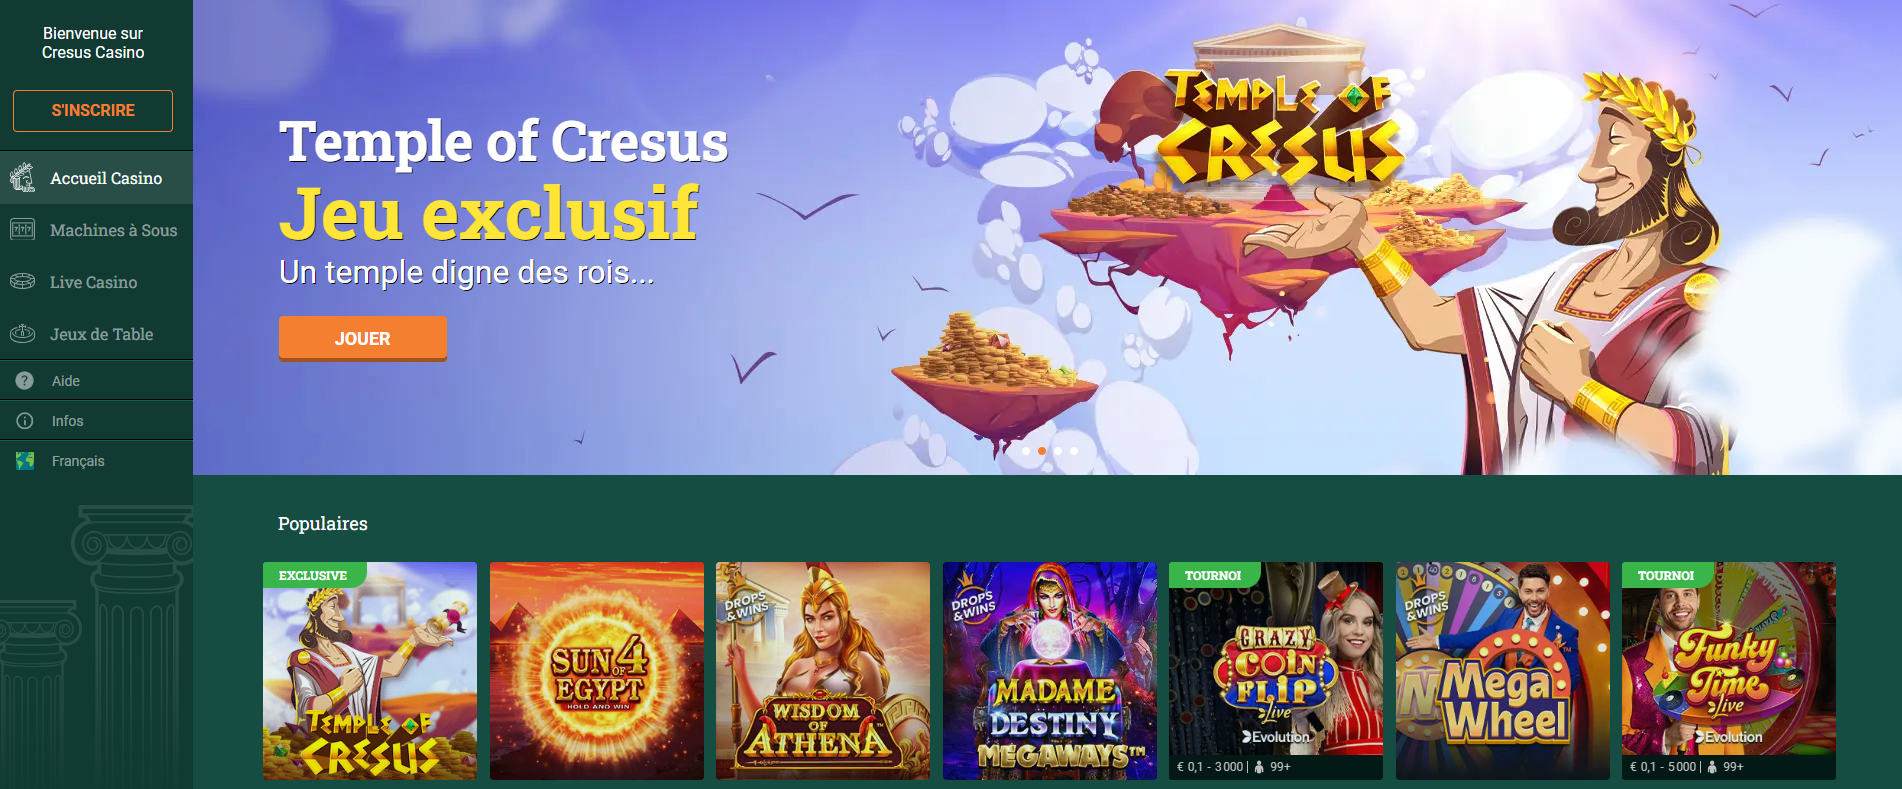 Download Cresus Casino